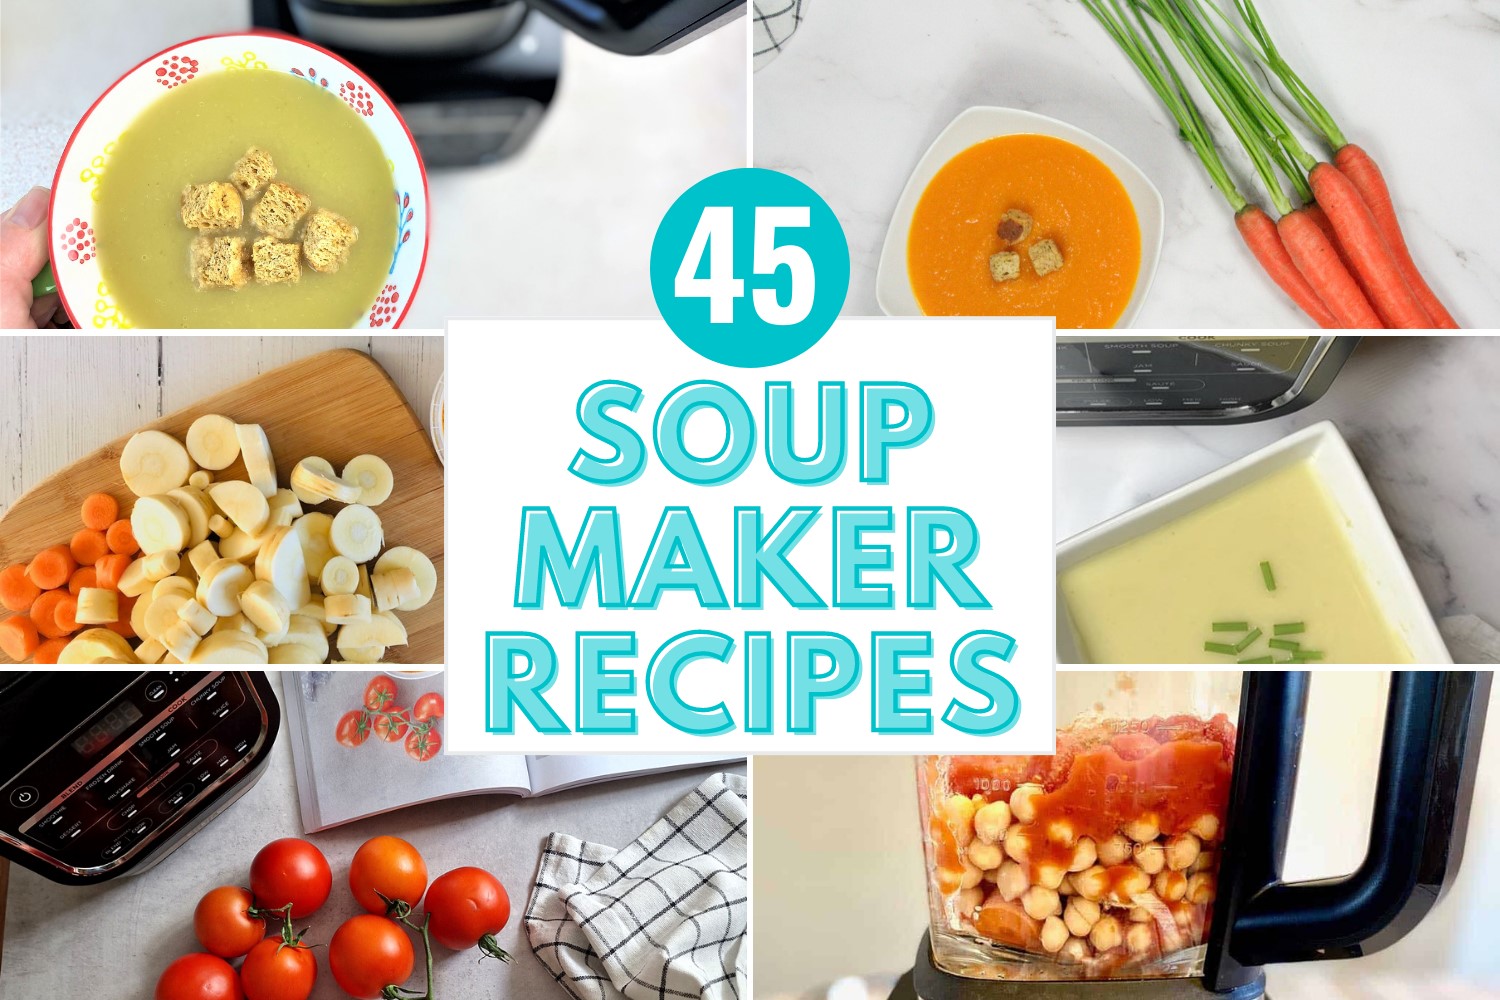 45 Soup Maker Recipes